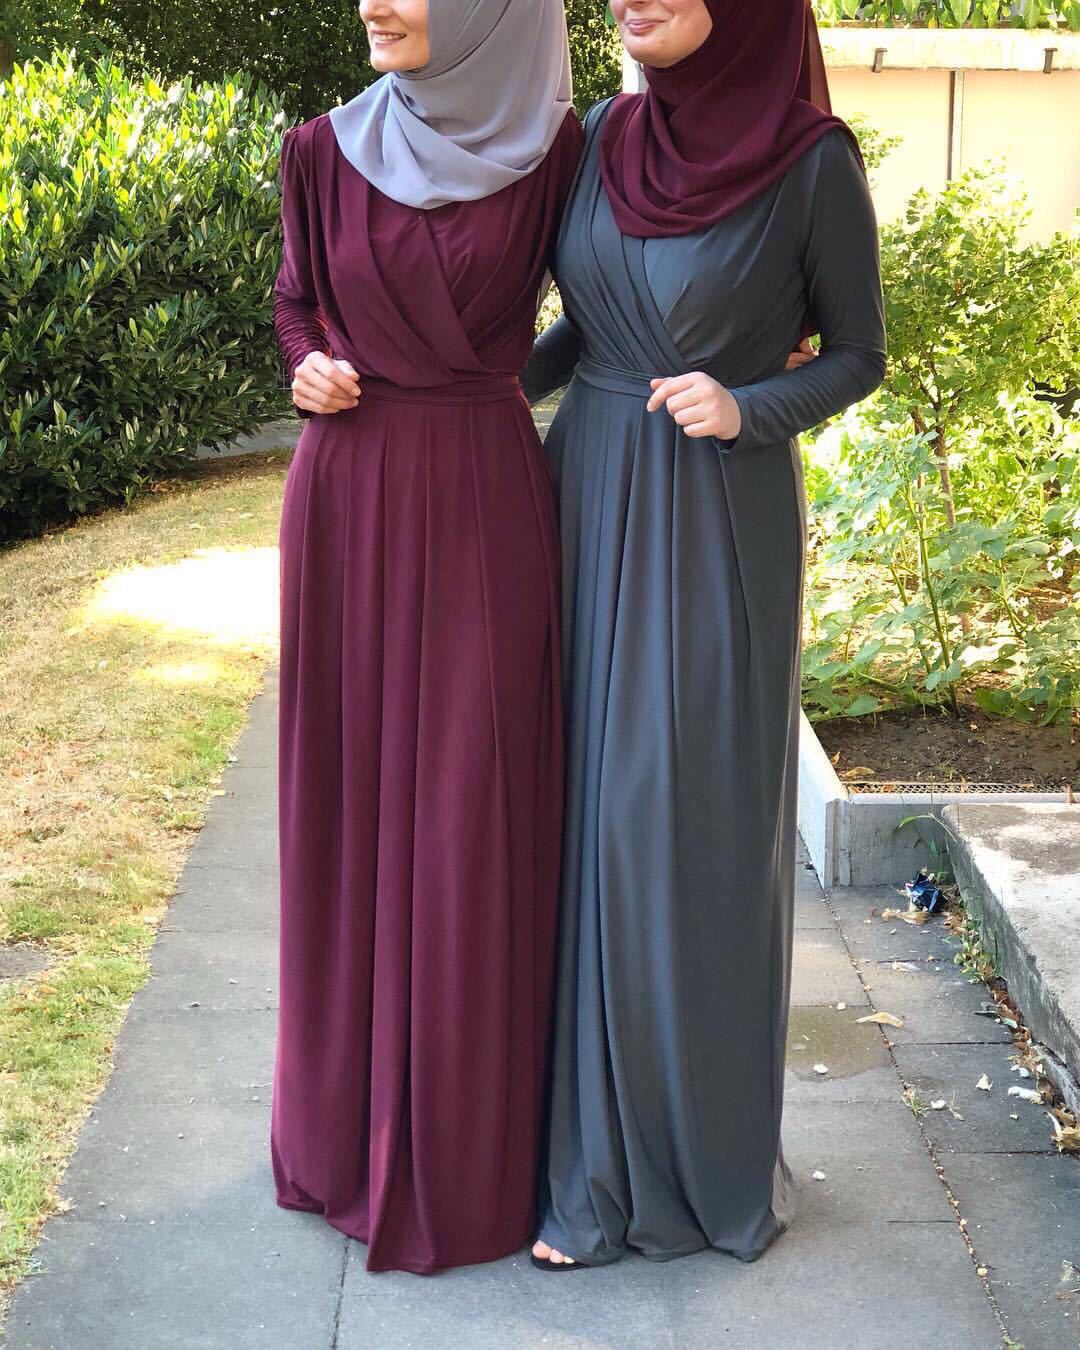 Women's V-neck Lace-up Pleated Abaya Dress